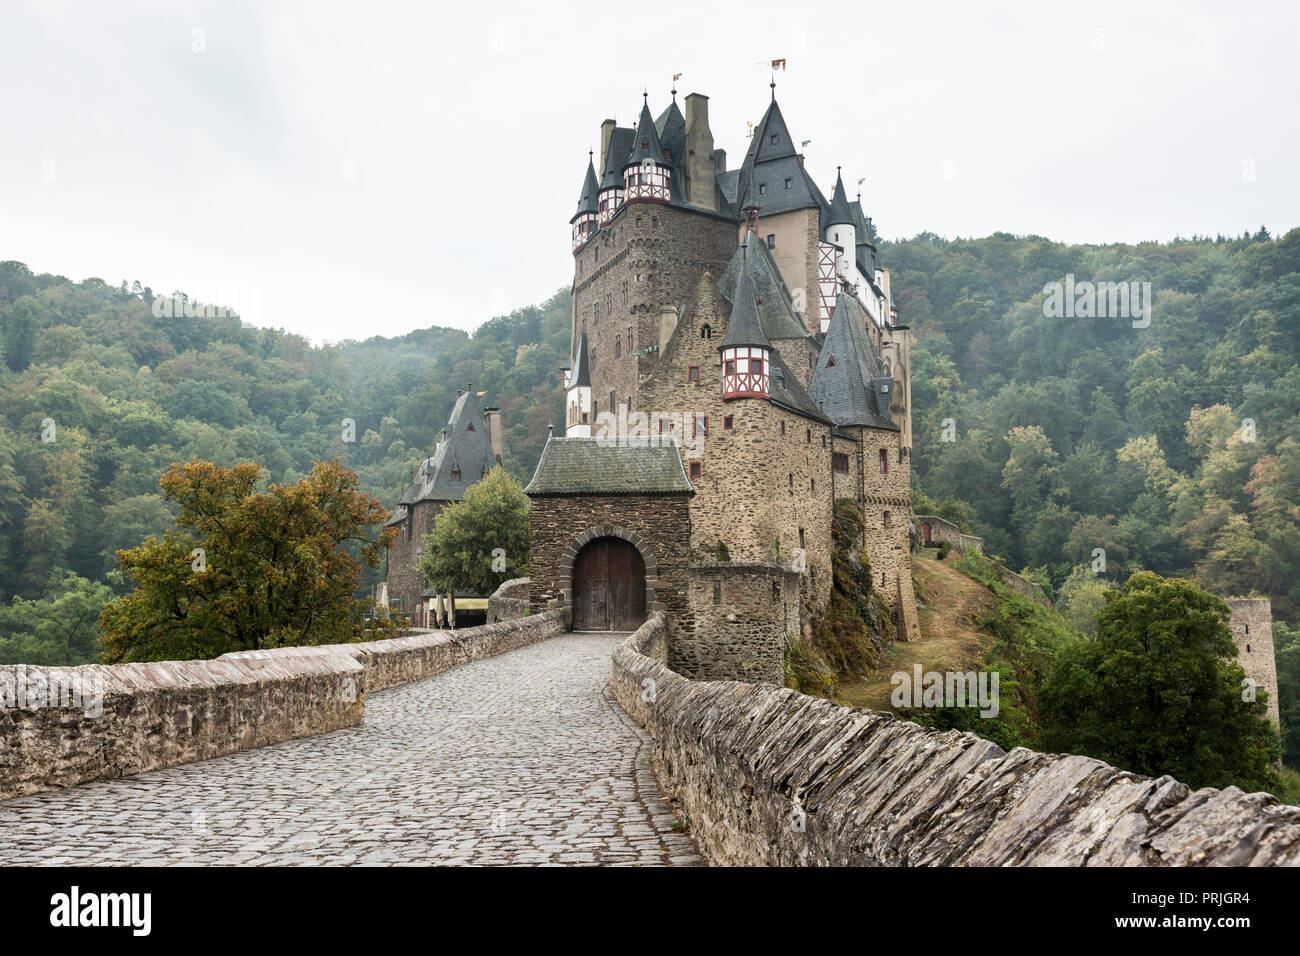 Eltz Castle, Ganerbenburg, Münstermaifeld, Wierschem, Moselle, Rhineland-Palatinate, Germany Stock Photo